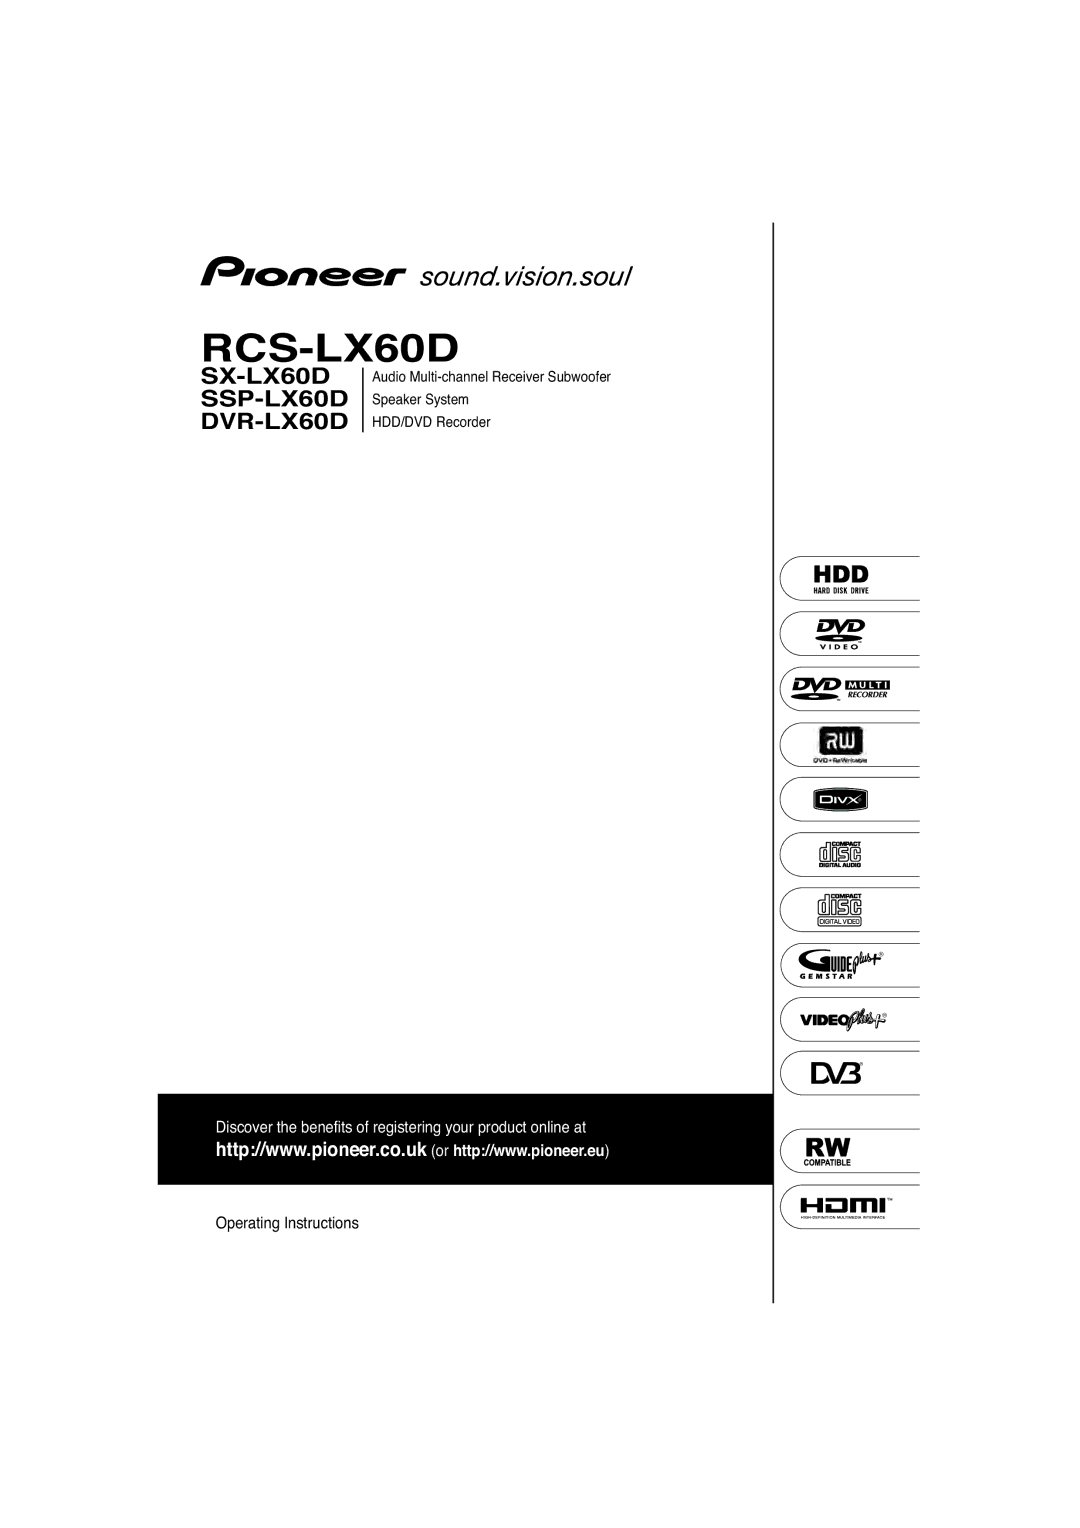 Pioneer SSP-LX60D, SX-LX60D manual RCS-LX60D 